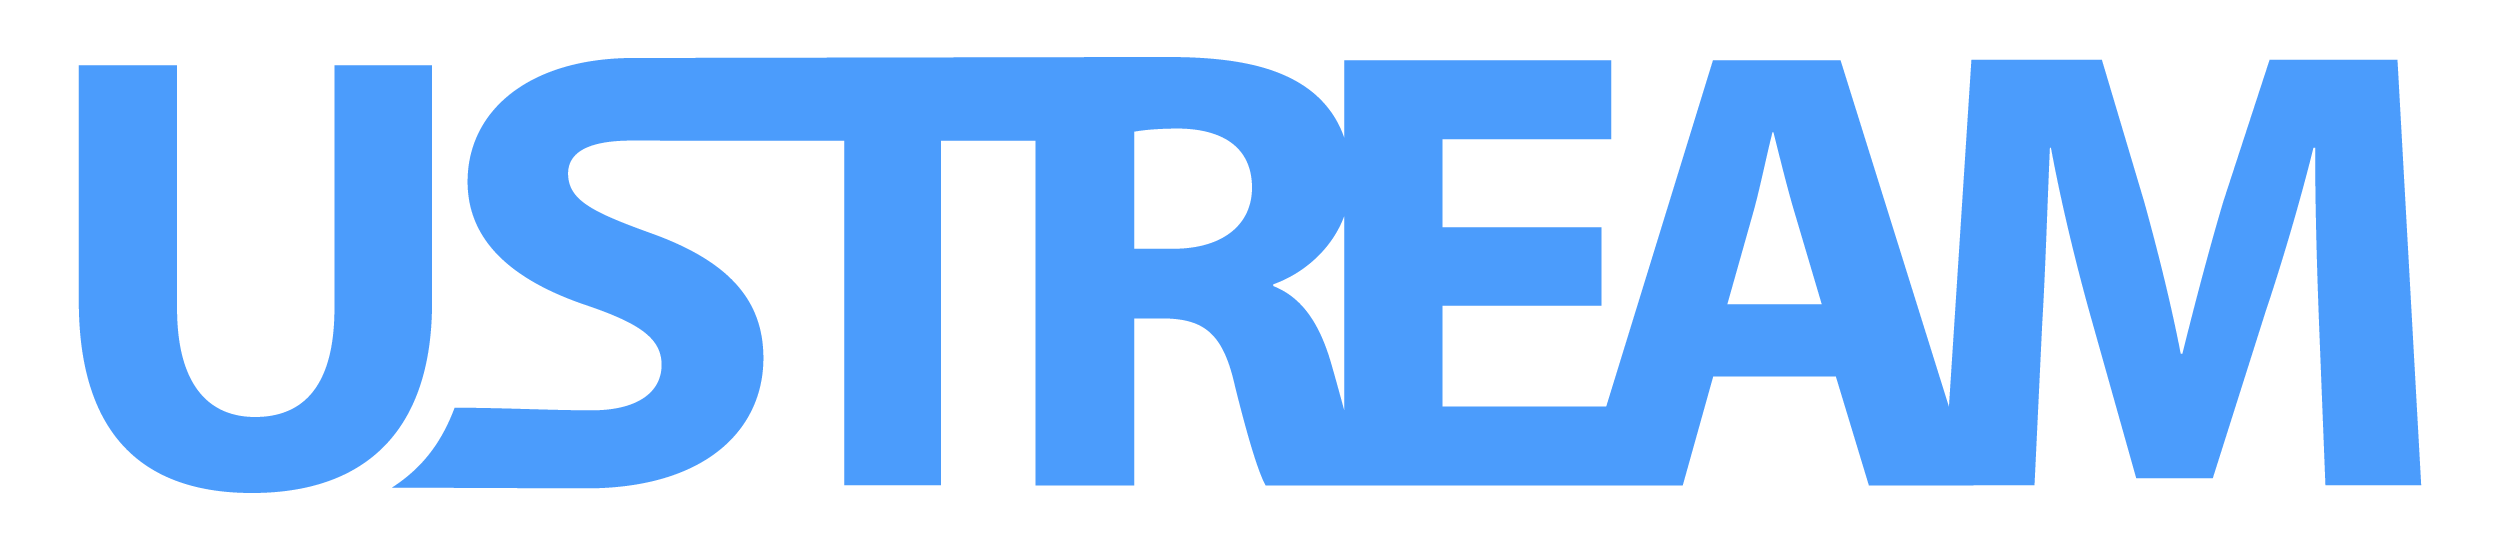 Ustream Logo Wallpaper